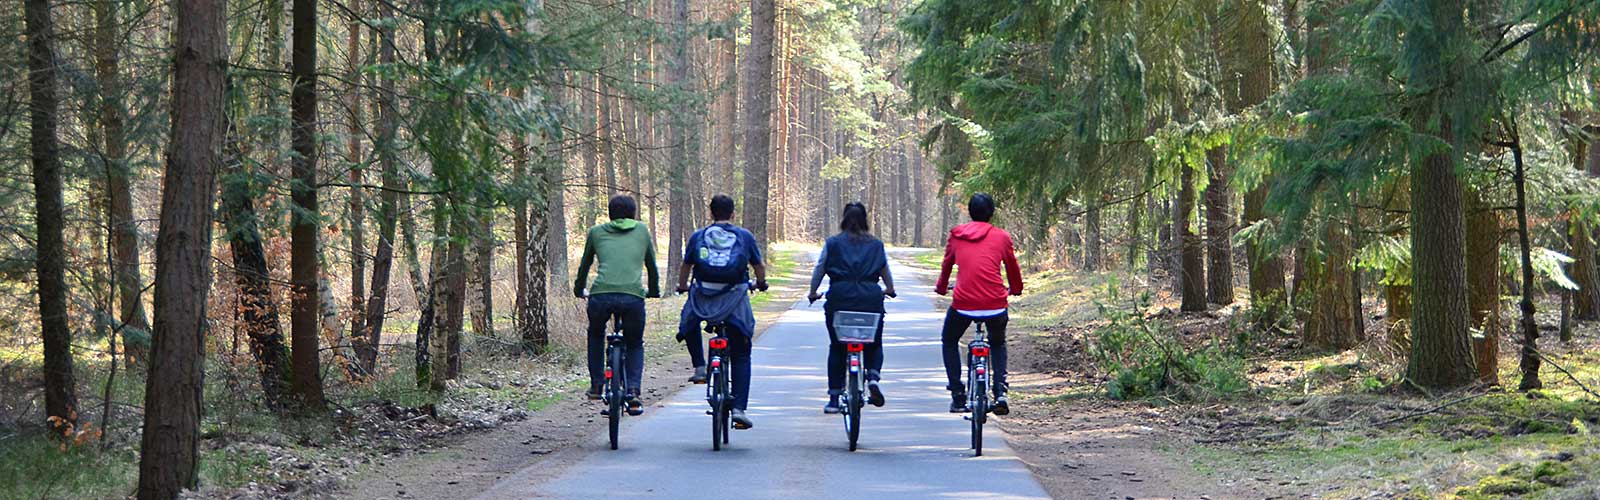 Fahrradtour vom Ferienpark Granzow / Mirow aus